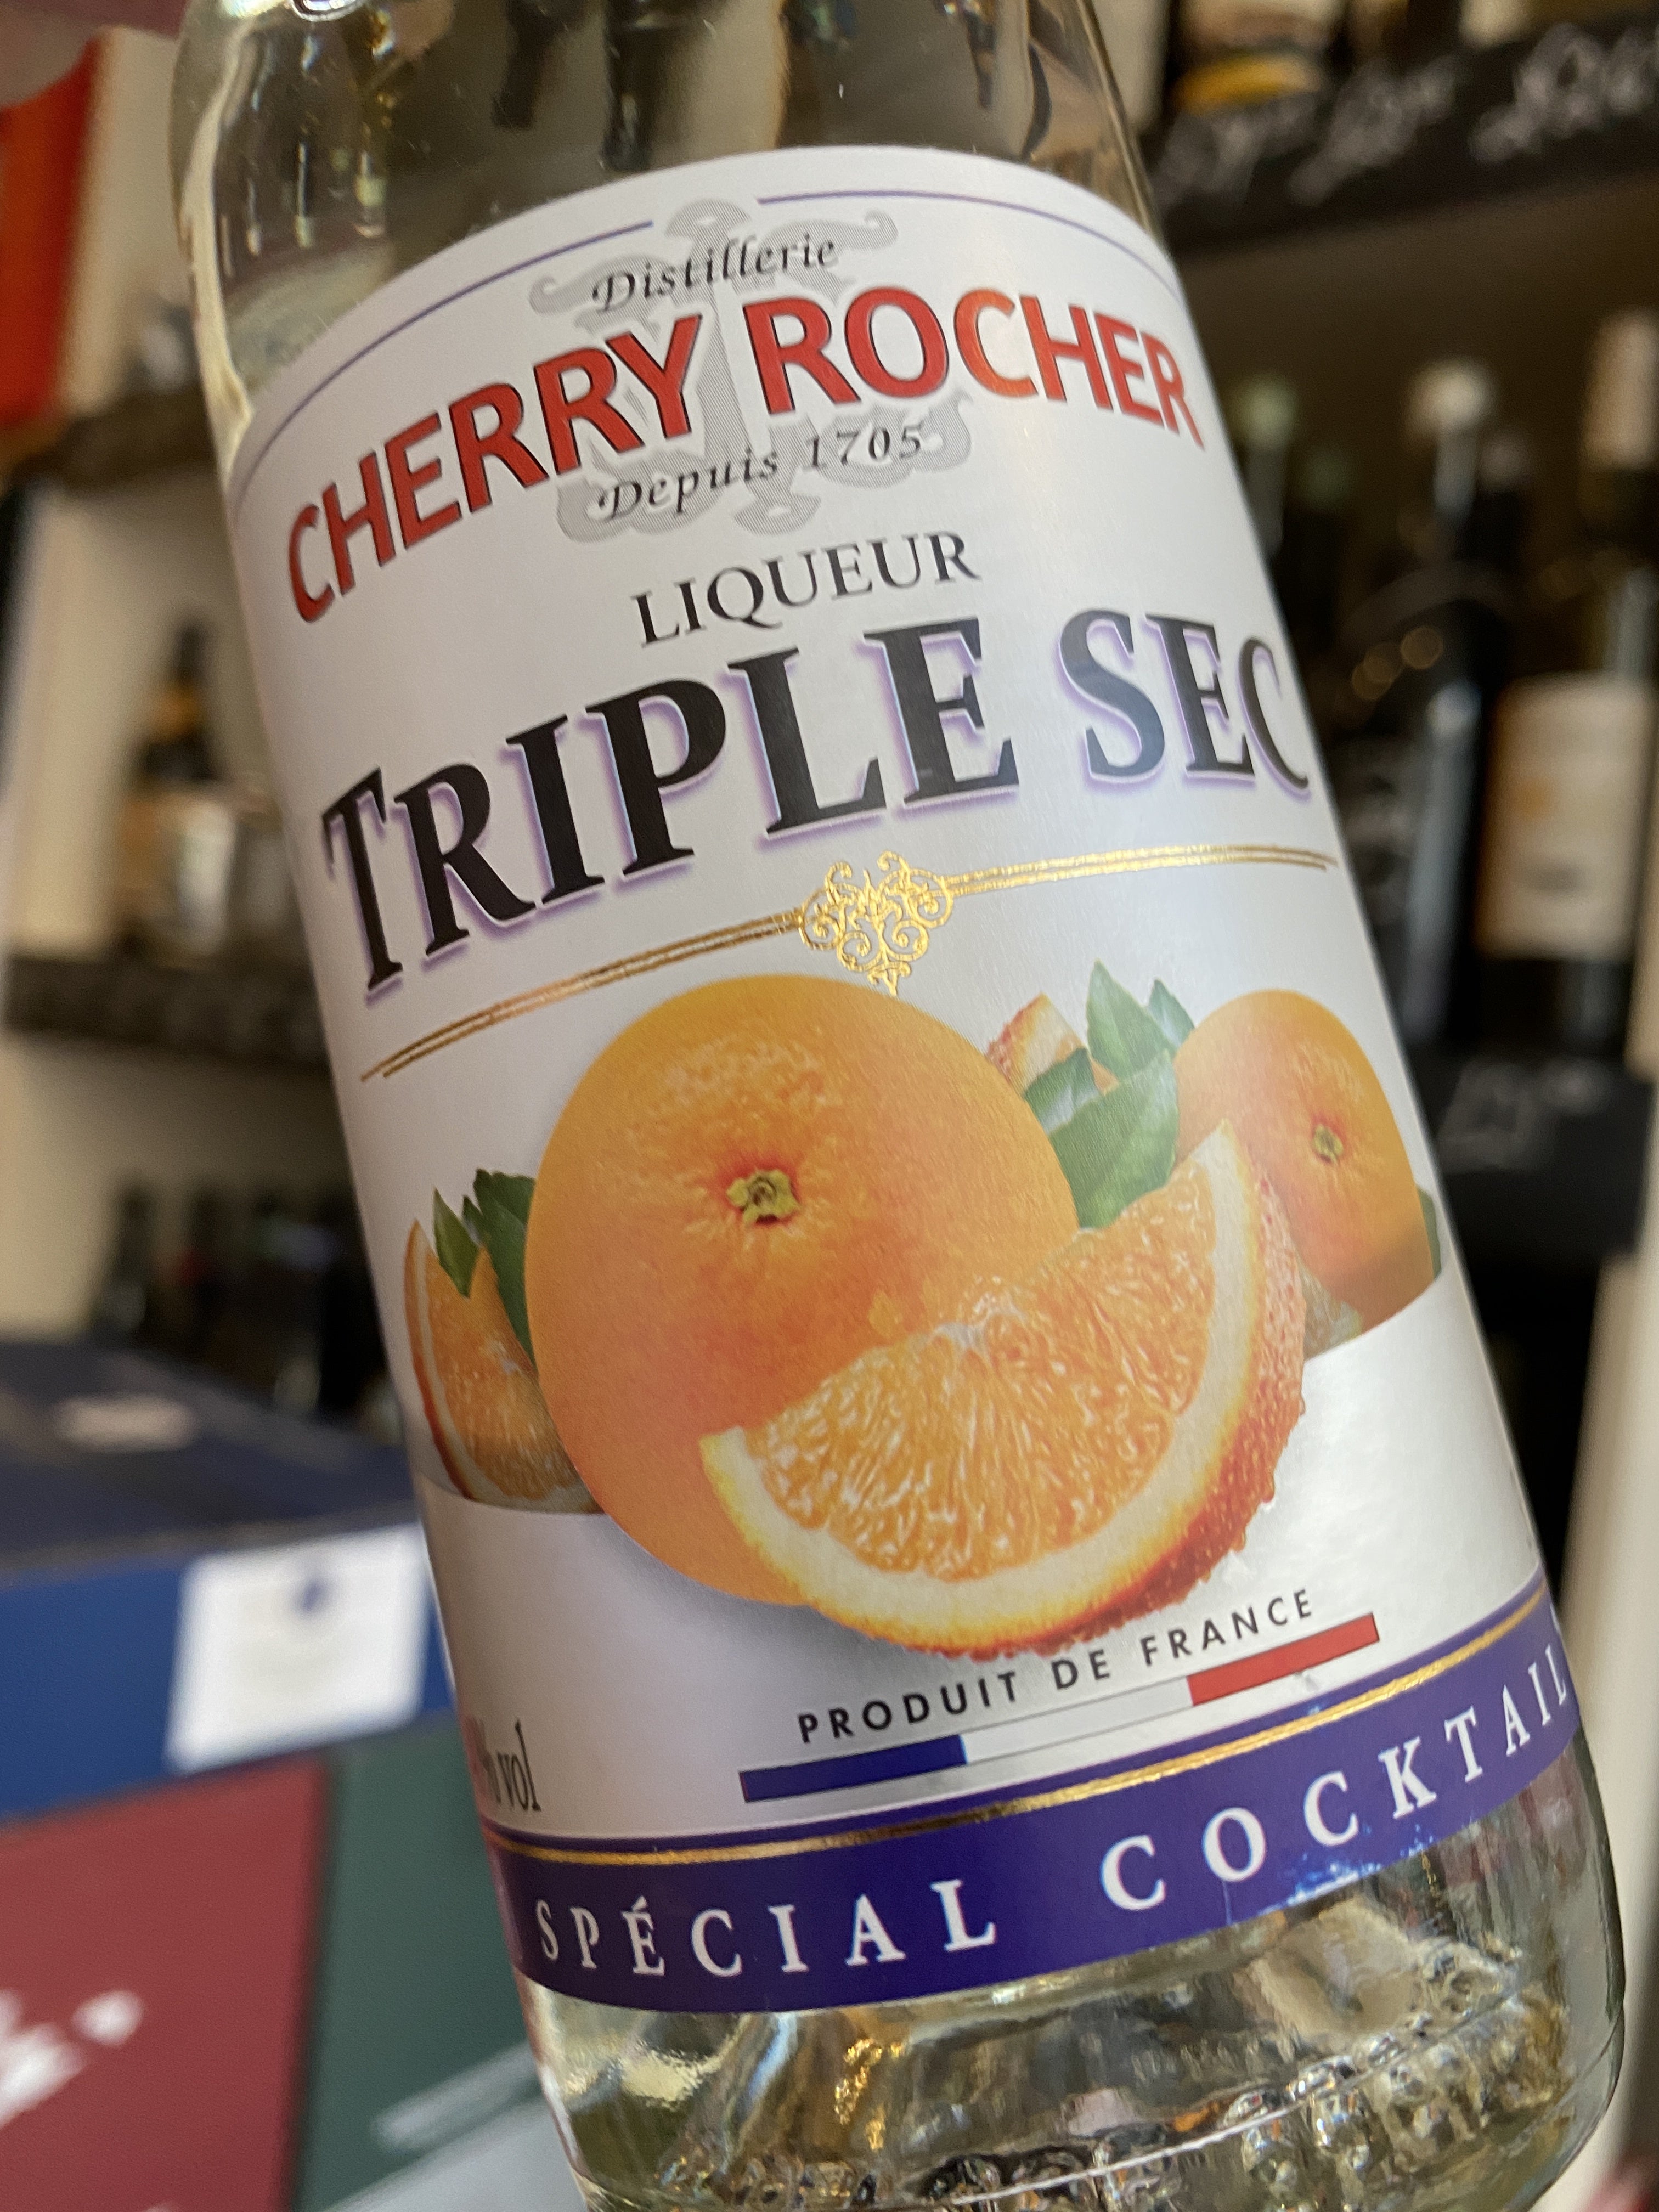 Triple sec (orange liqueur) - Cocktail liqueurs - Cherry-rocher